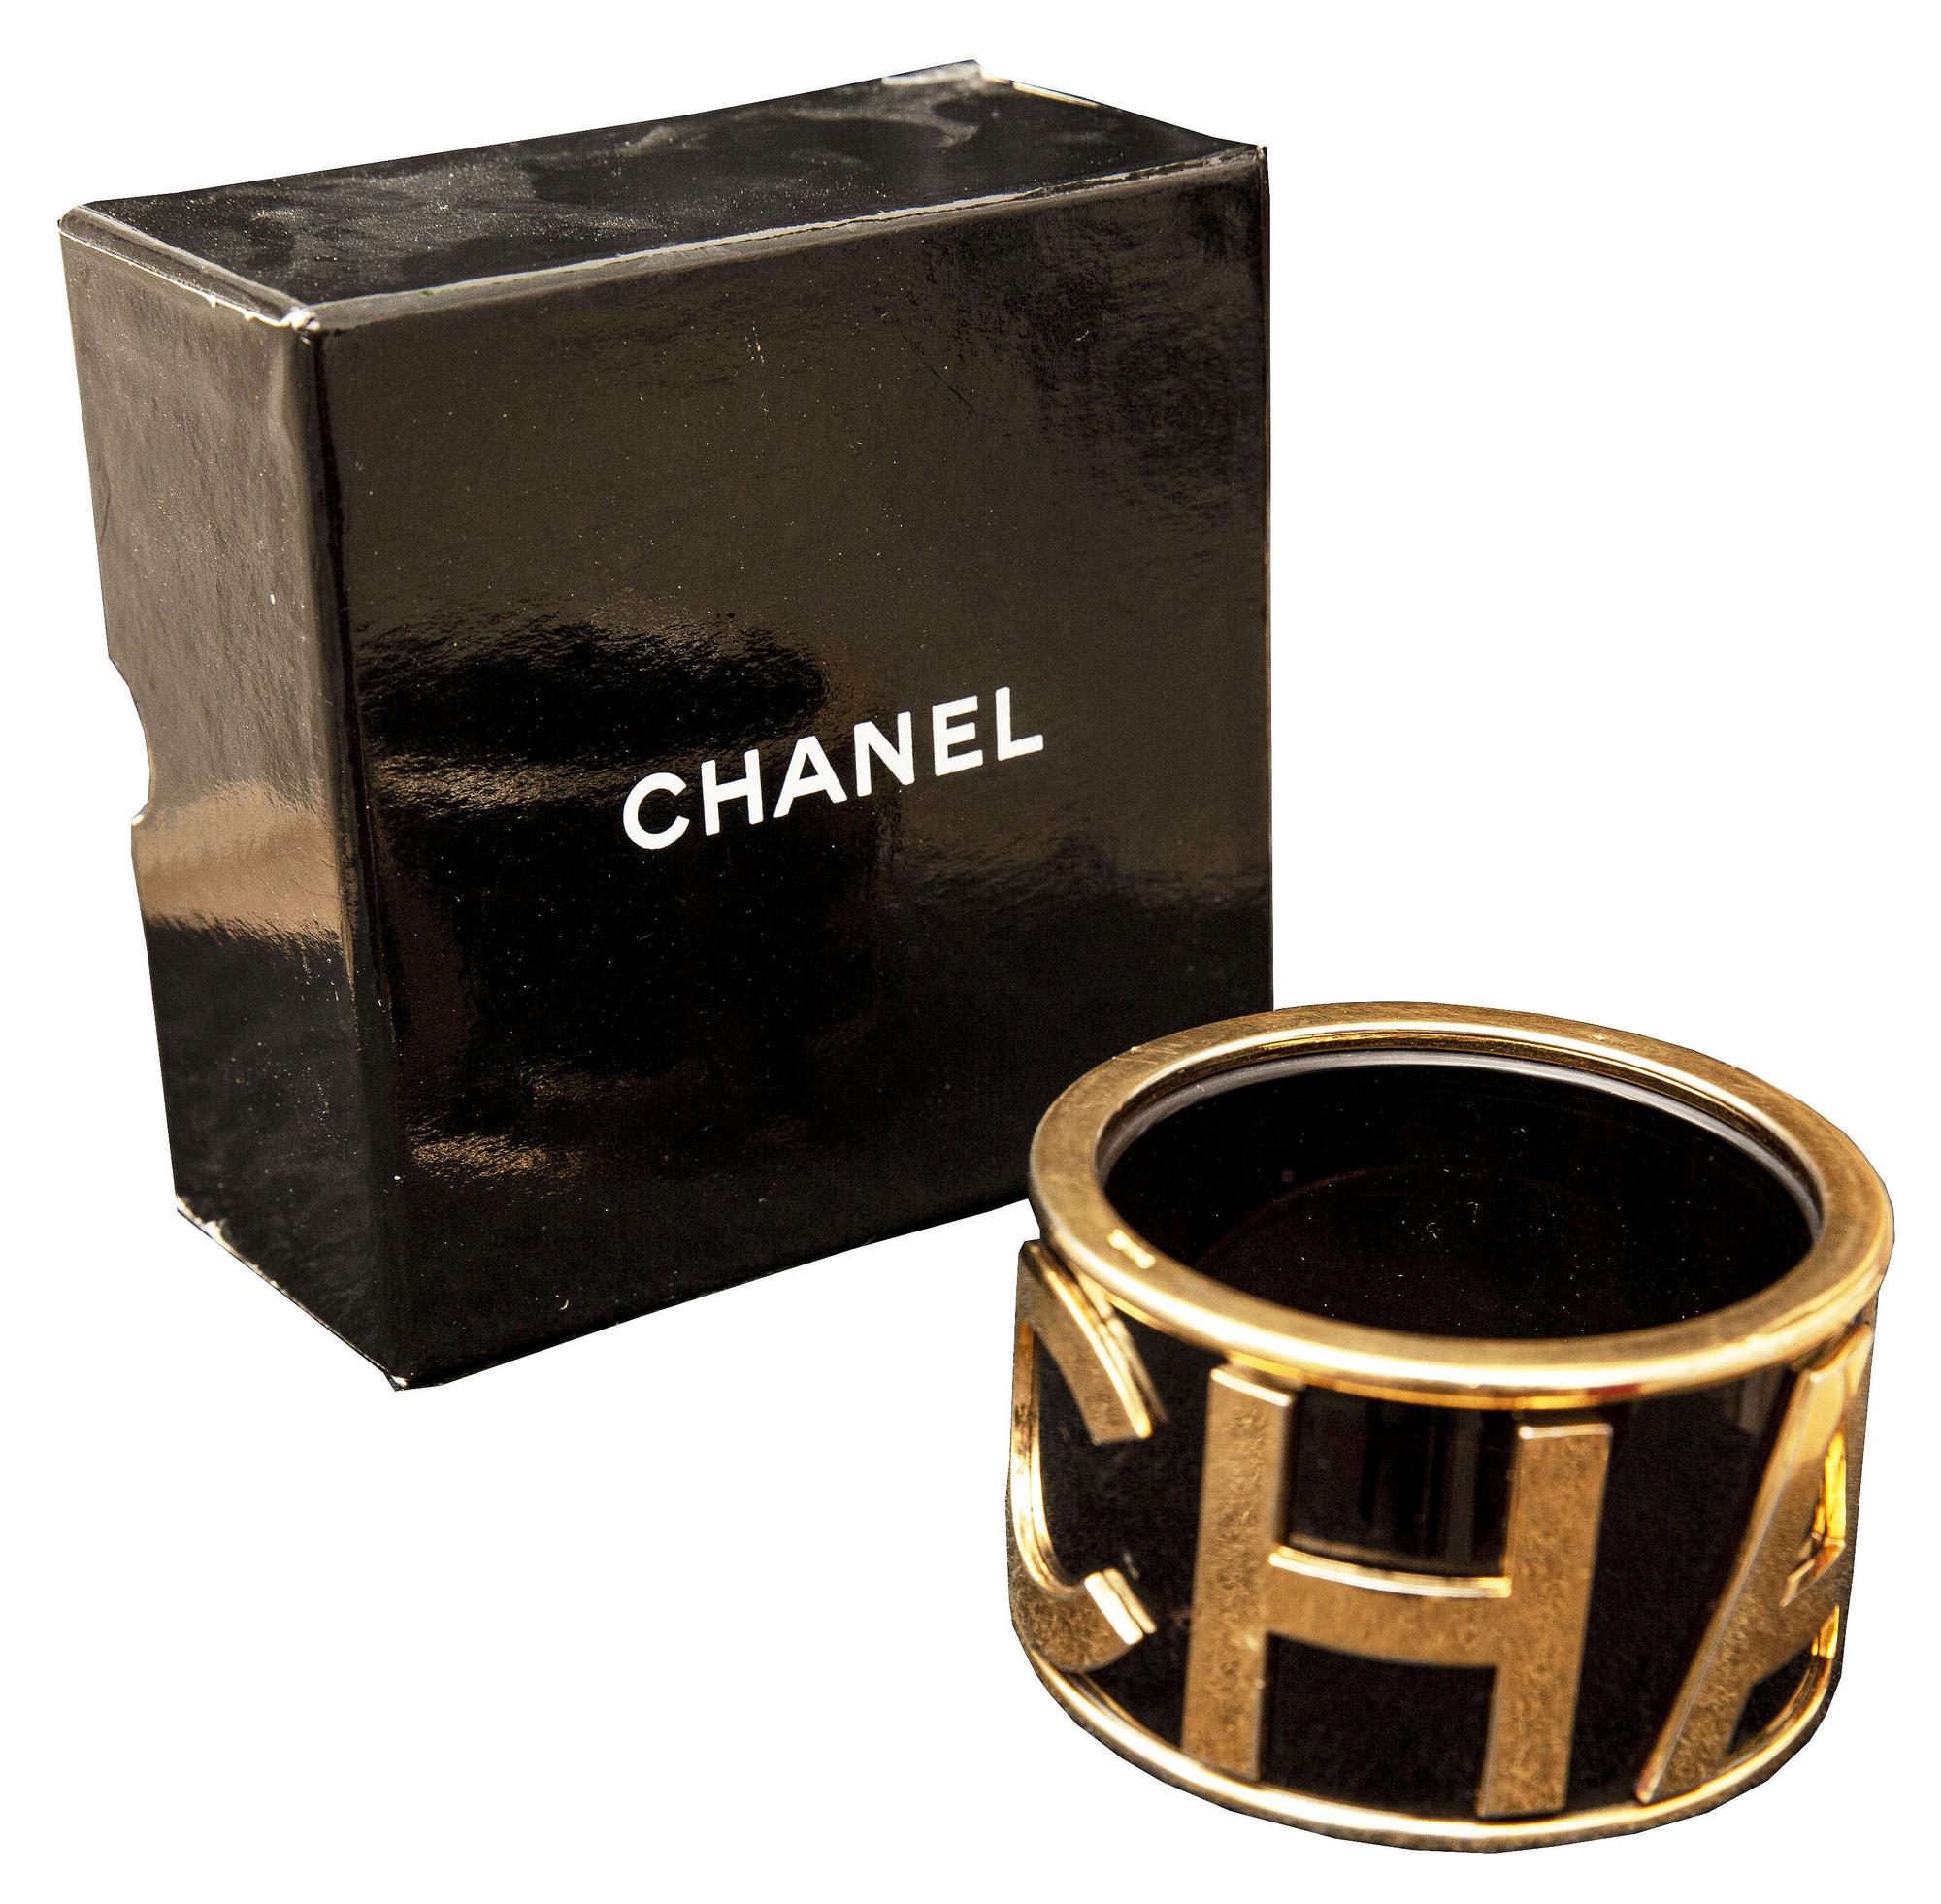 Chanel BRACELET Description: Iconic rigid bracelet with large golden Chanel...